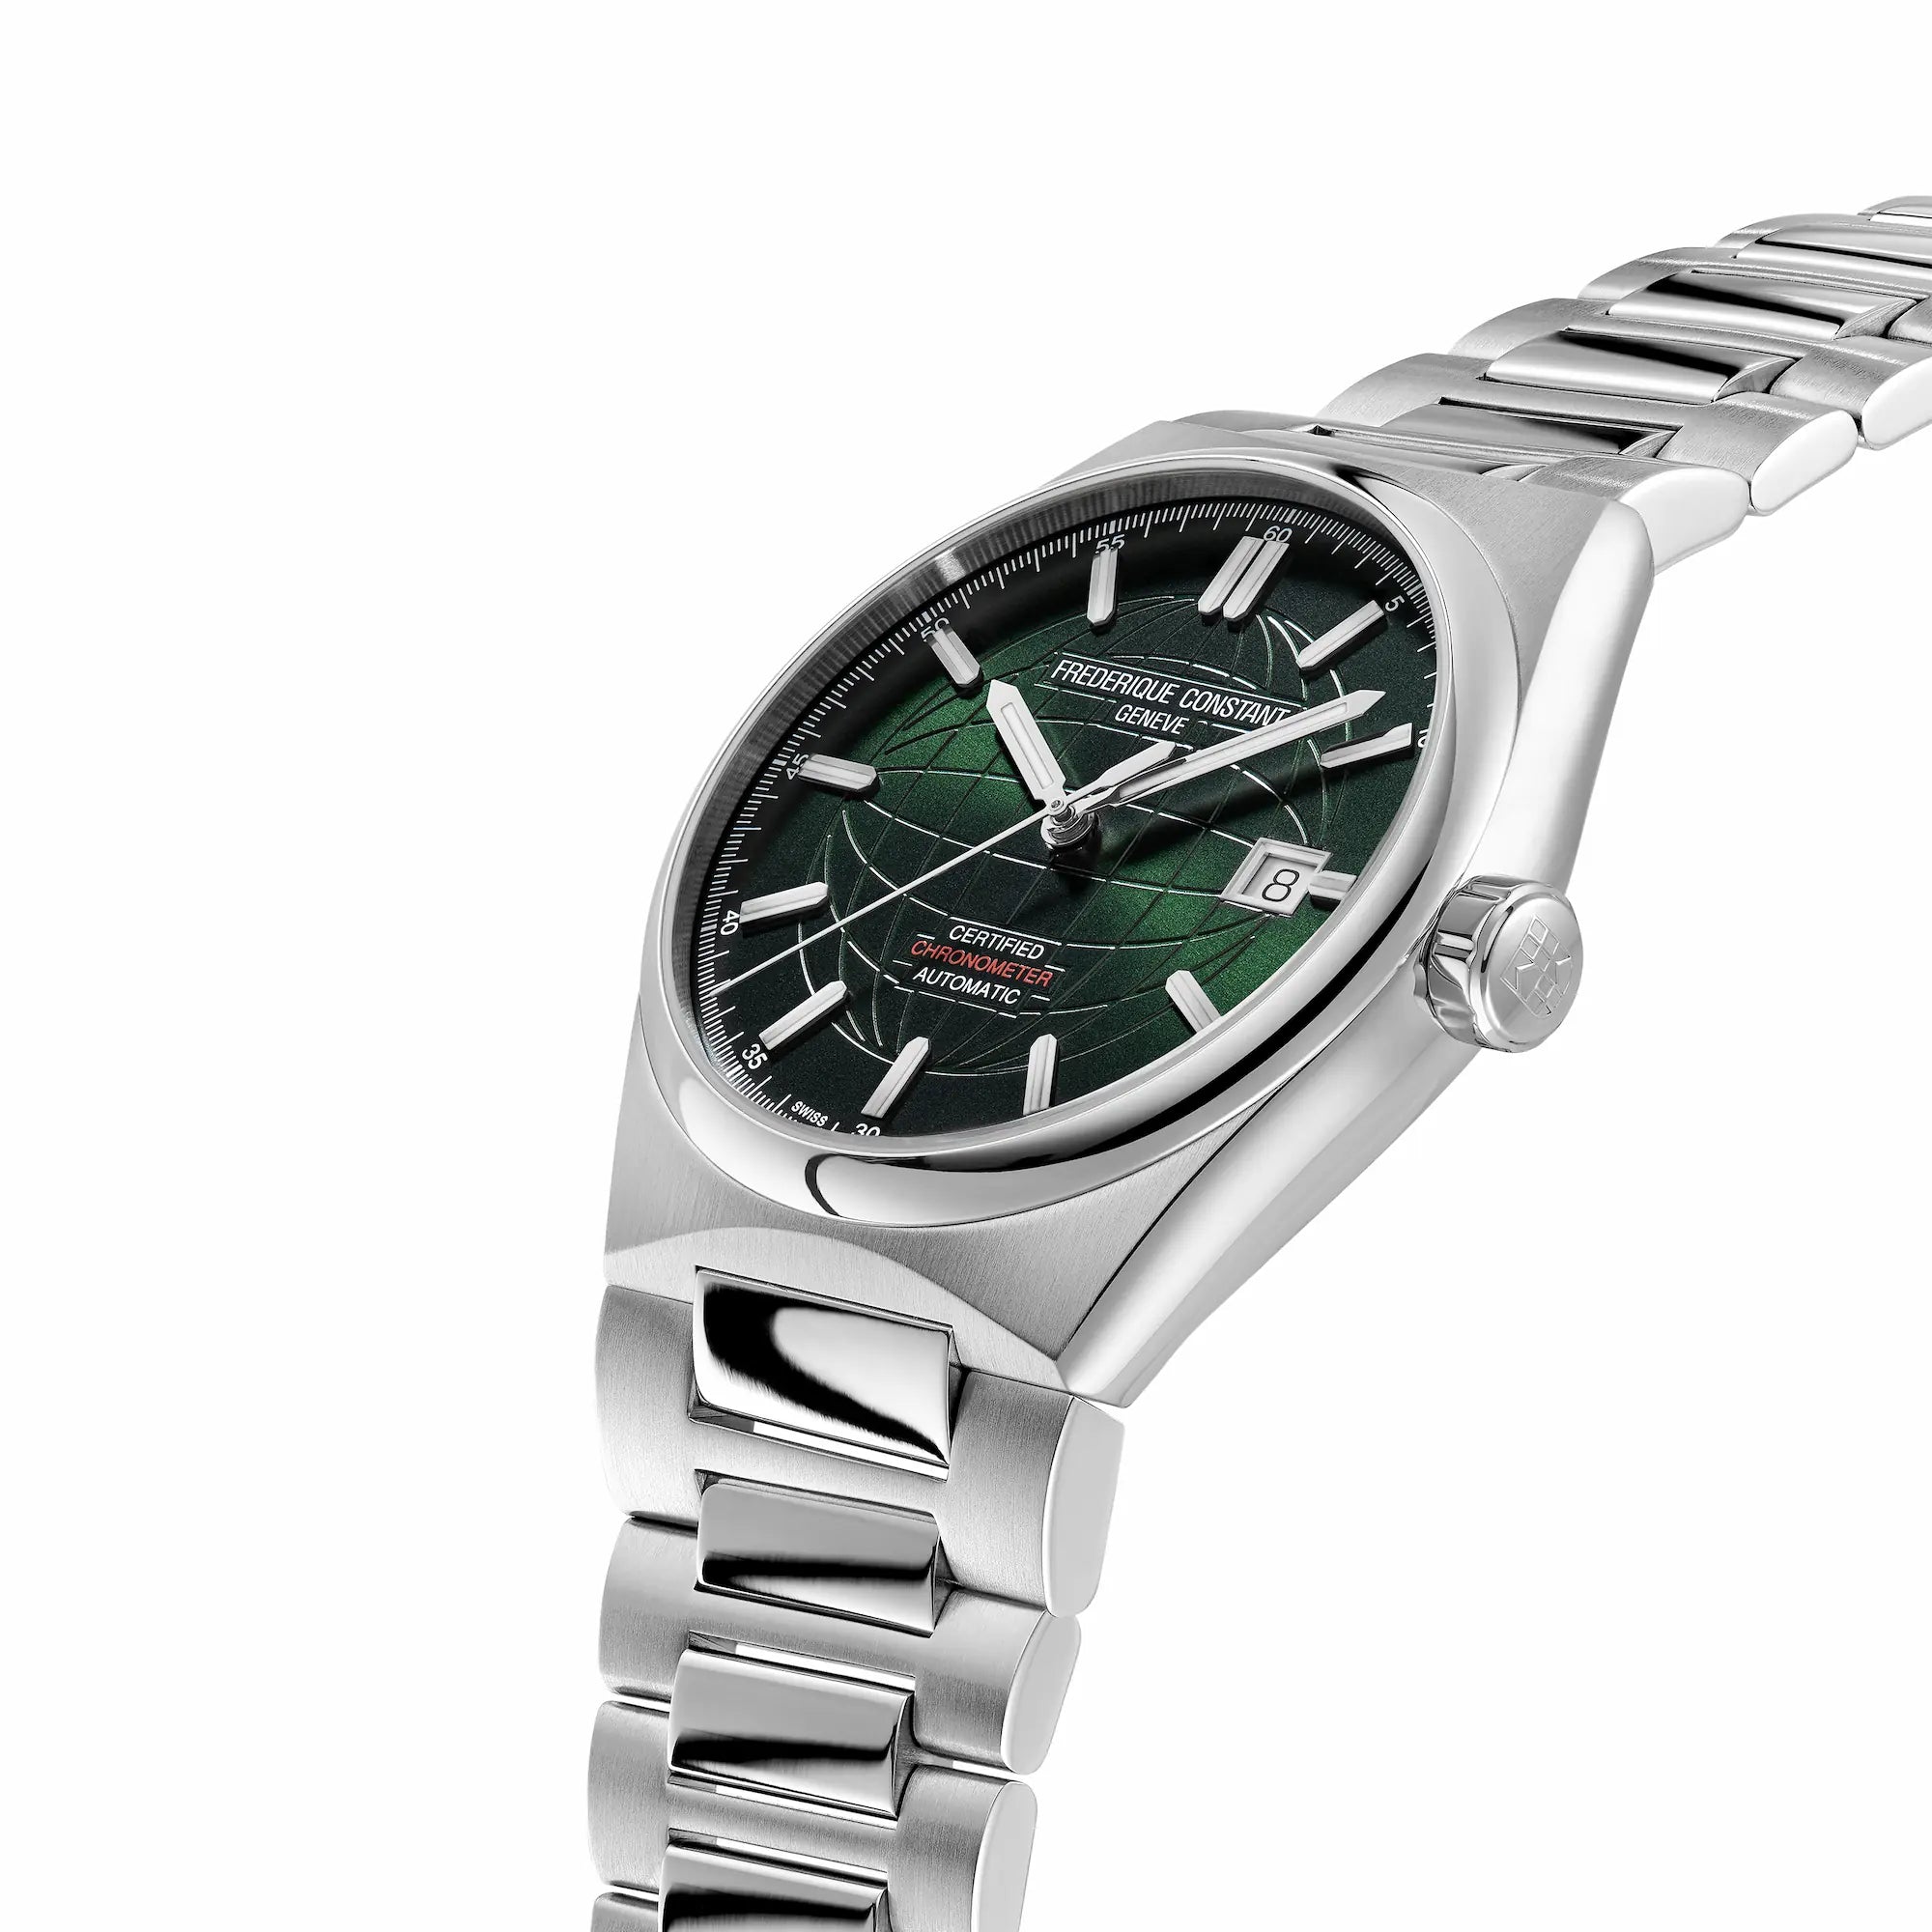 Leicht seitliche Ansicht des Uhren-Modells "Highlife Automatic COSC" mit dem grünen Sonnenschliff Zifferblatt von Frederique Constant